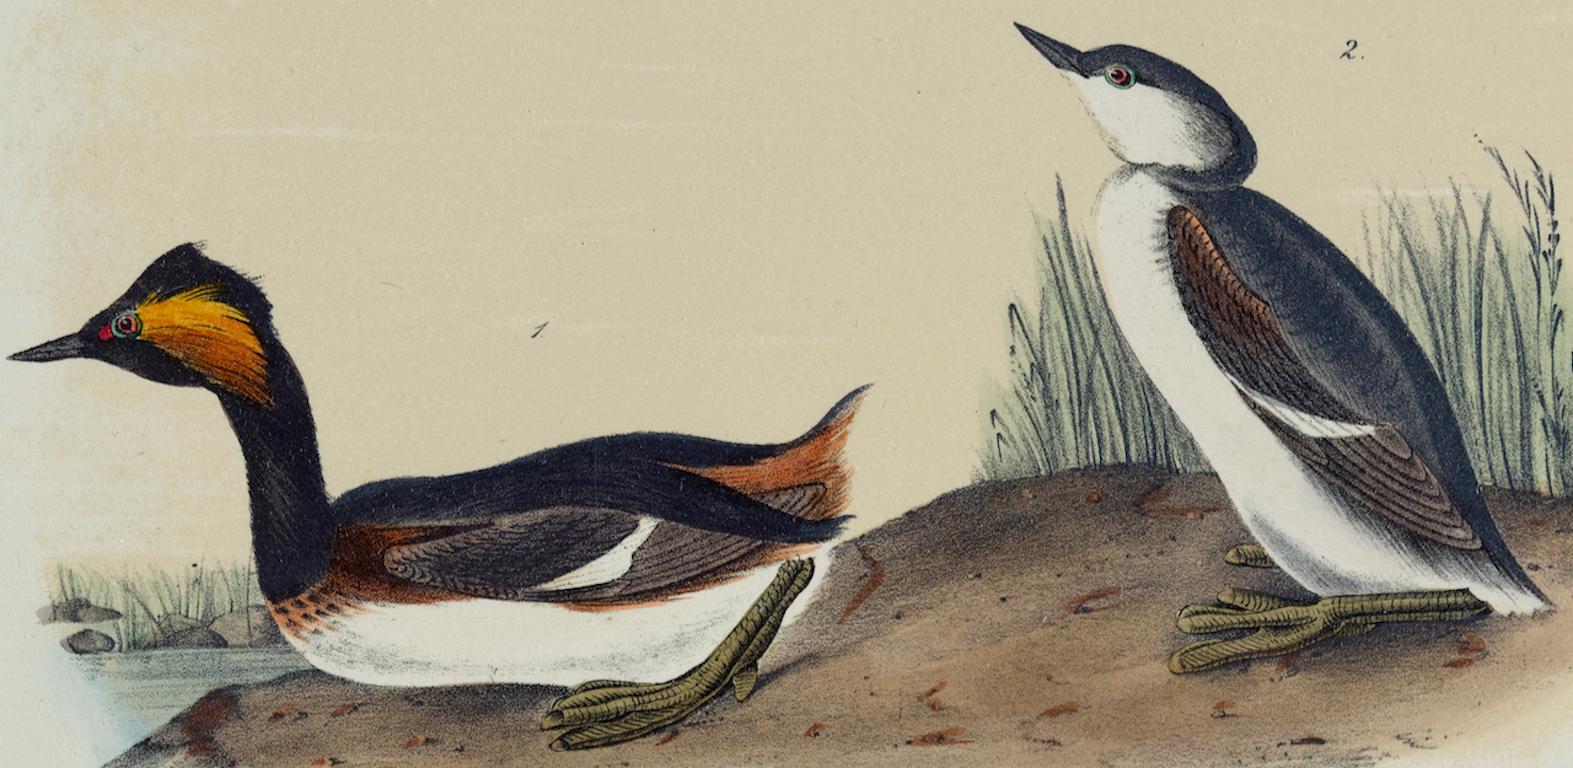 Eared Grebe : une lithographie originale d'Audubon du 19e siècle, colorée à la main  - Naturalisme Print par John James Audubon